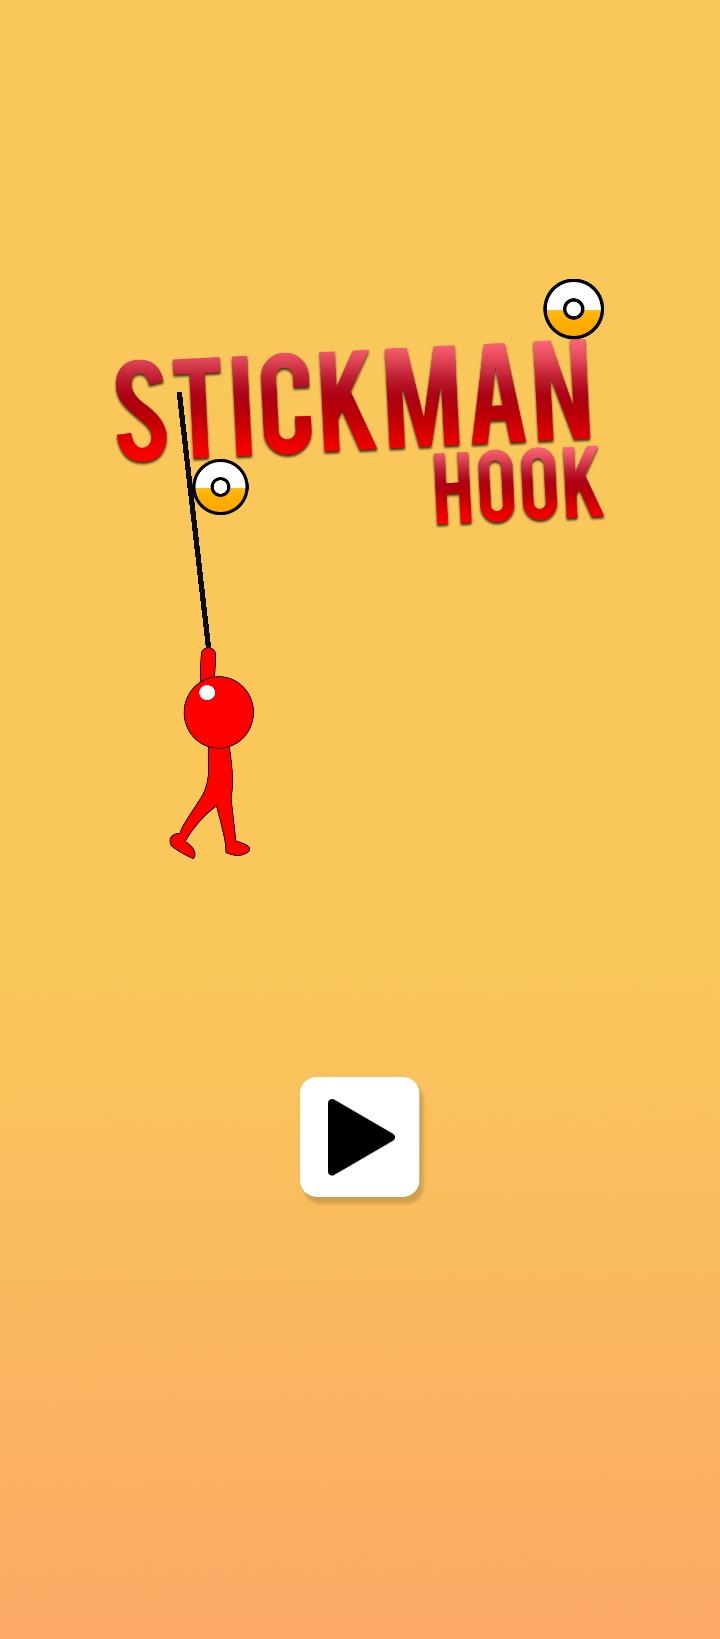 Stickman Hook APK para Android - Download